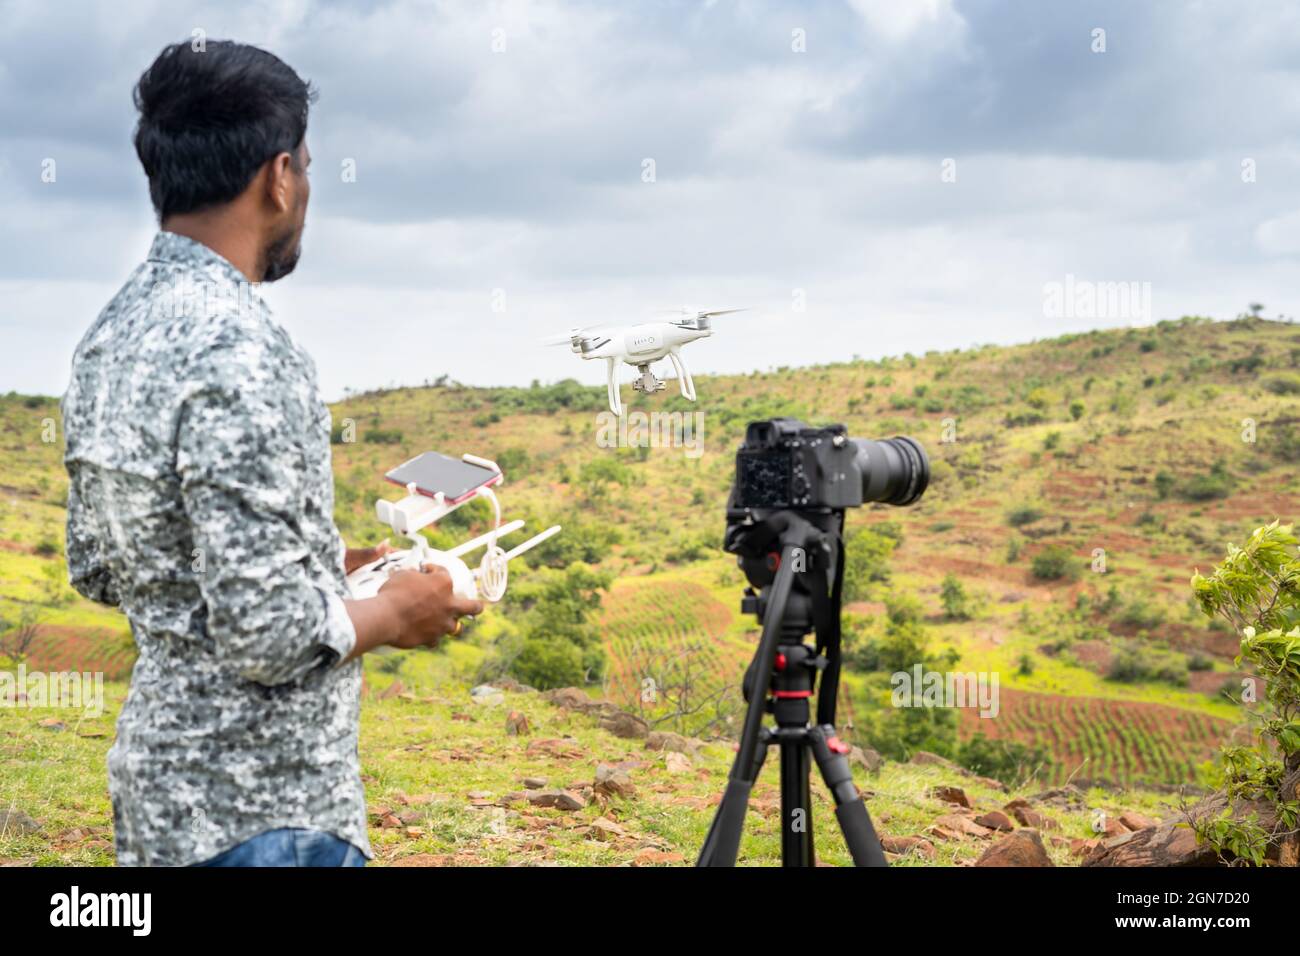 Focus sur drone, jeune vidéaste filmant la vidéo en contrôlant drone à l'aide de la télécommande - concept de photographie de drone professionnelle et aérienne Banque D'Images